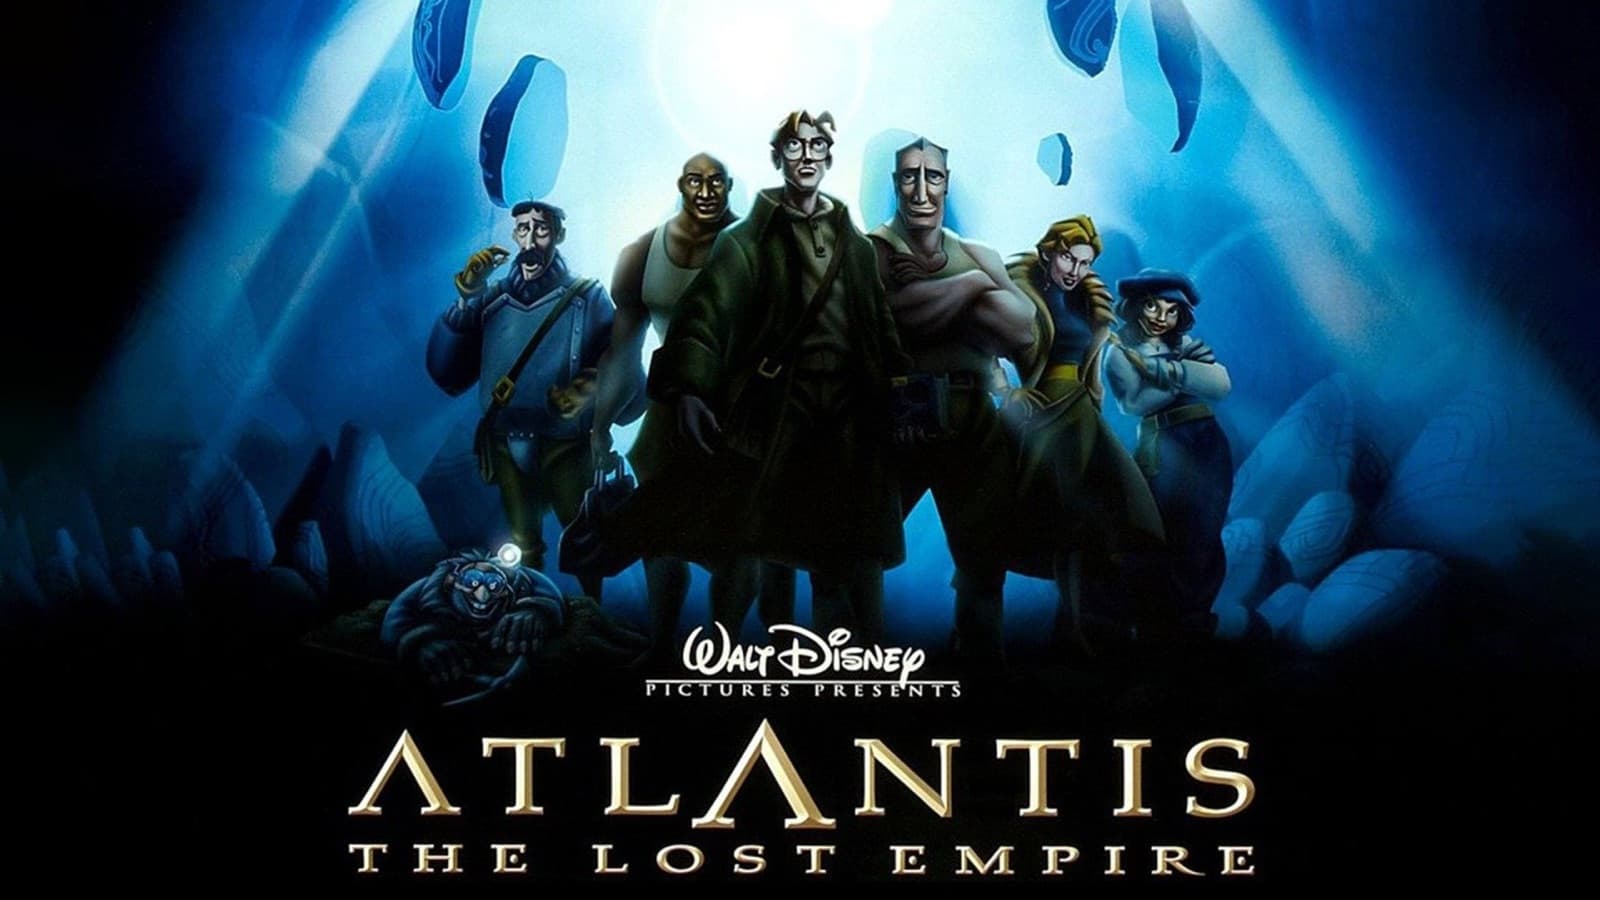 Атлантида Затерянный мир (2001)